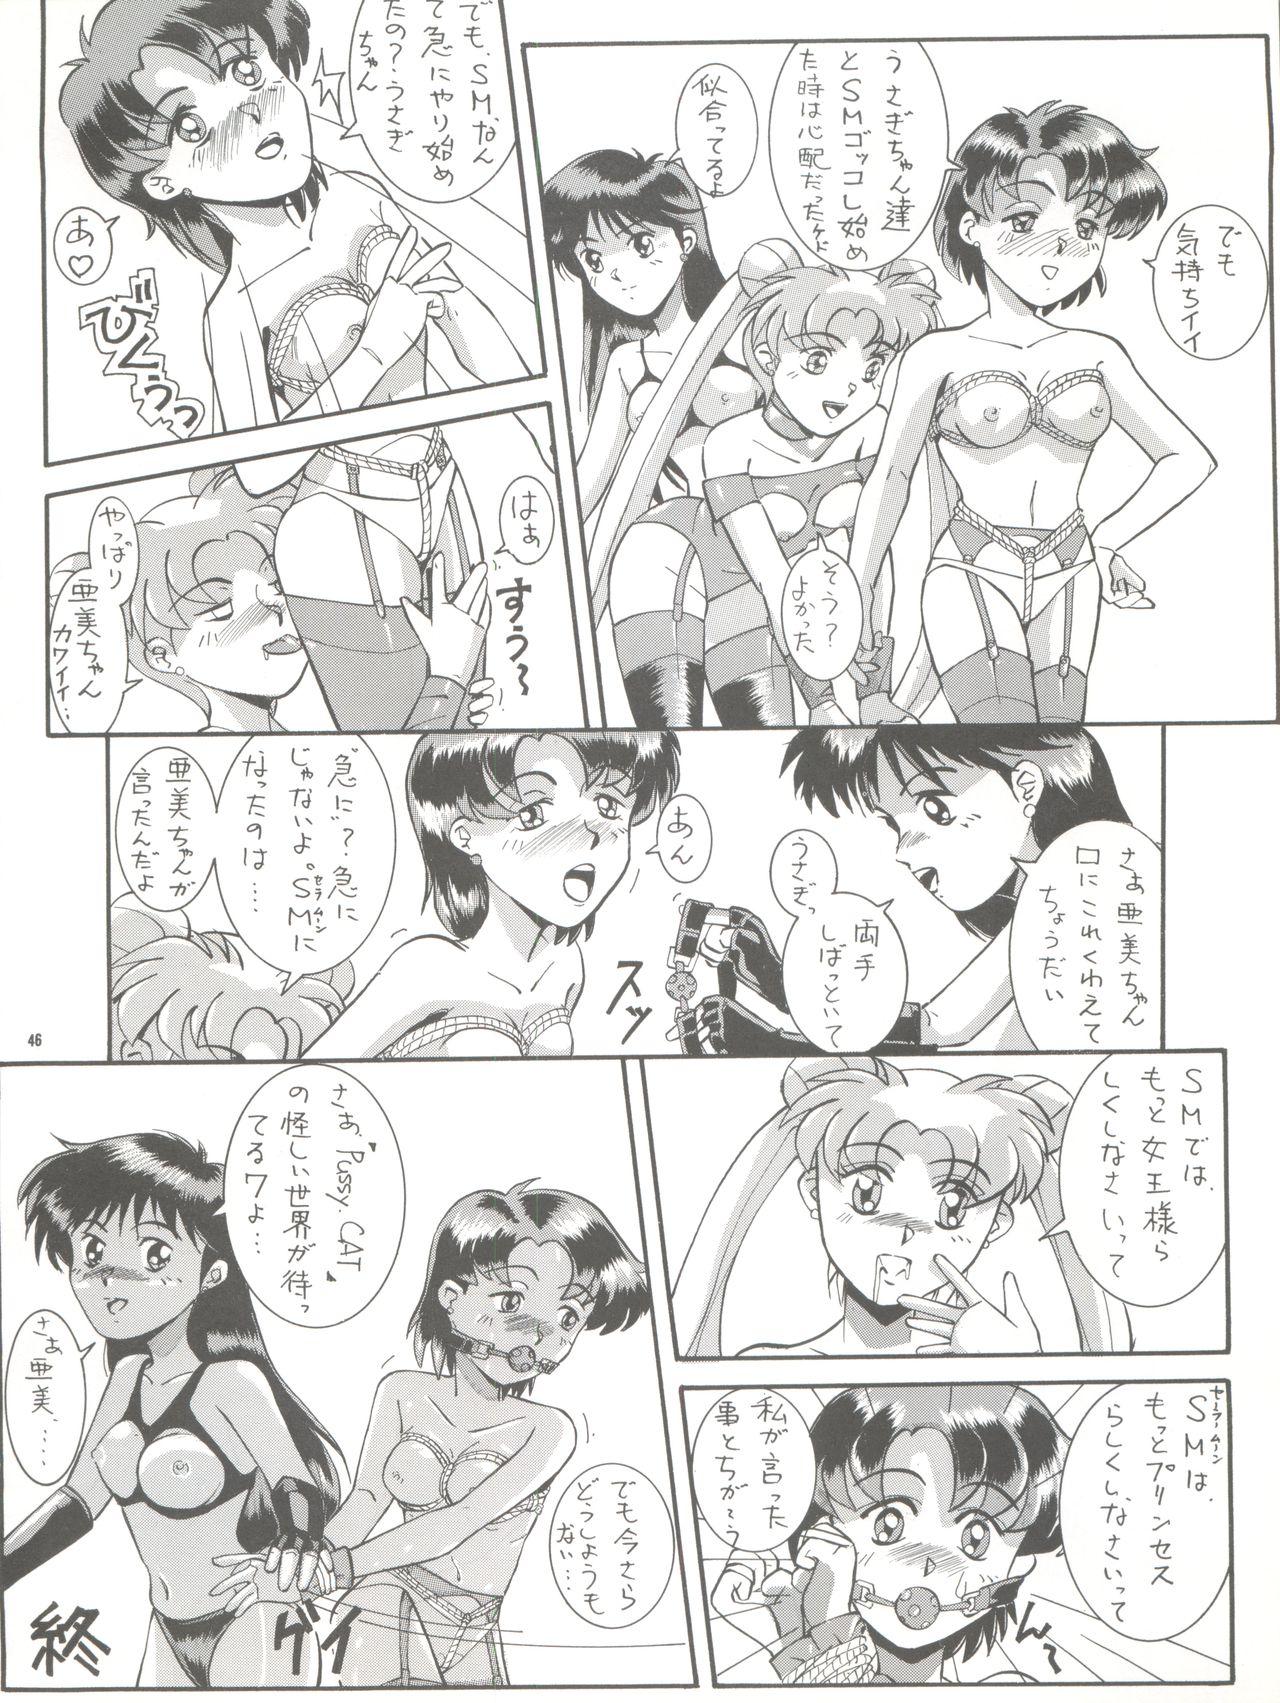 PUSSY CAT Vol. 26 Sailor Moon 3 45